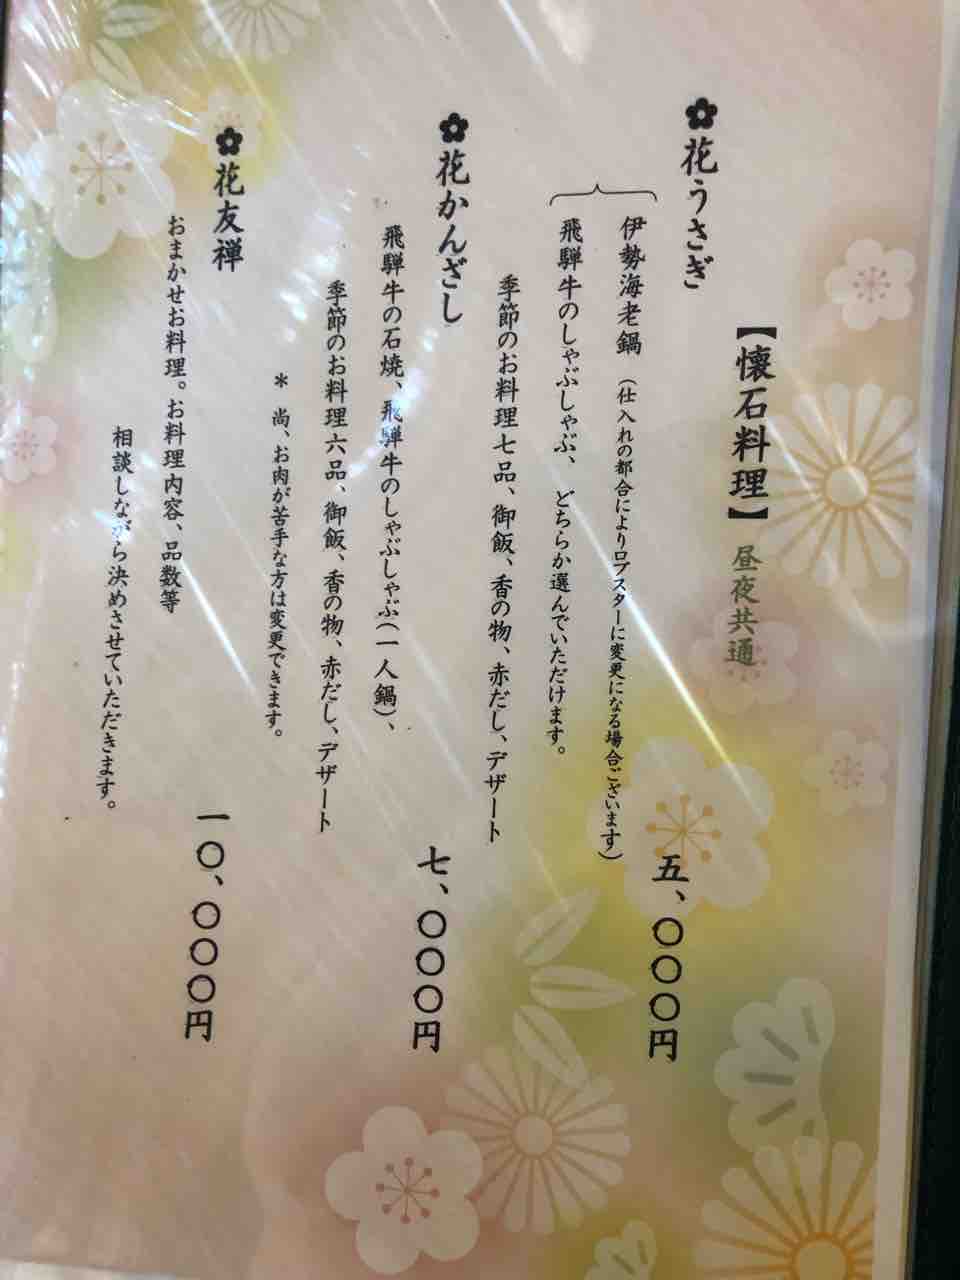 『日本料理 花野江』懐石料理のメニュー